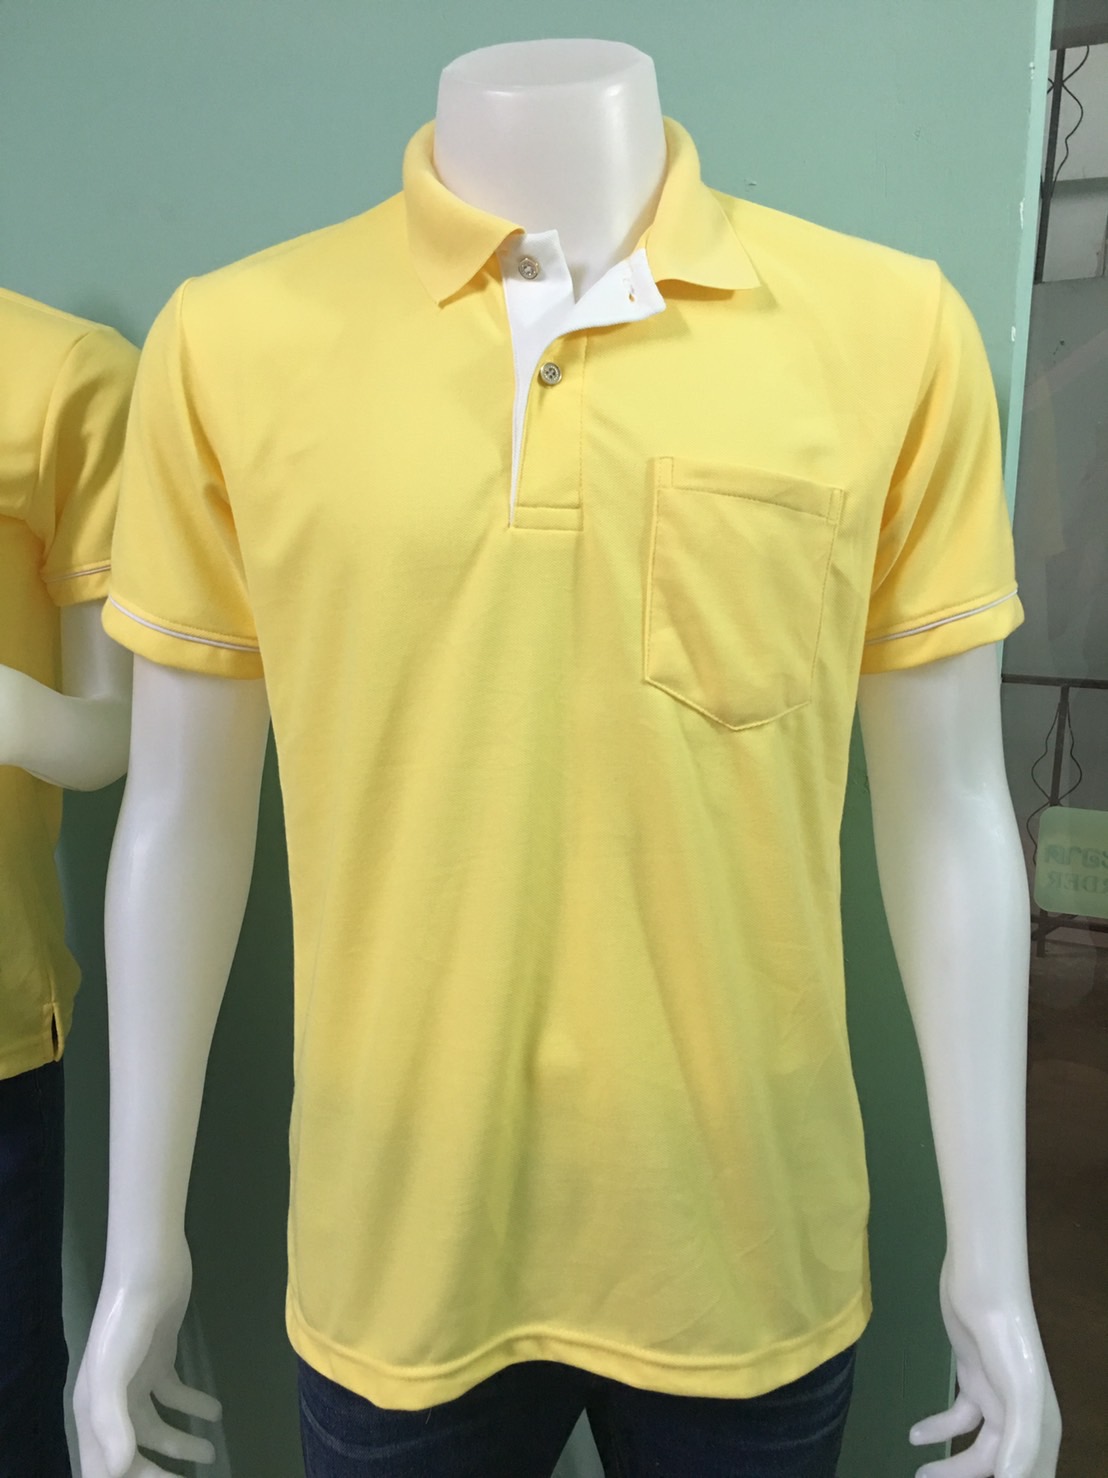 C H shop เสื้อโปโลสีเหลือง ทรงผู้ชายทรงผู้หญิง ชุดทำงาน สีเหลือง